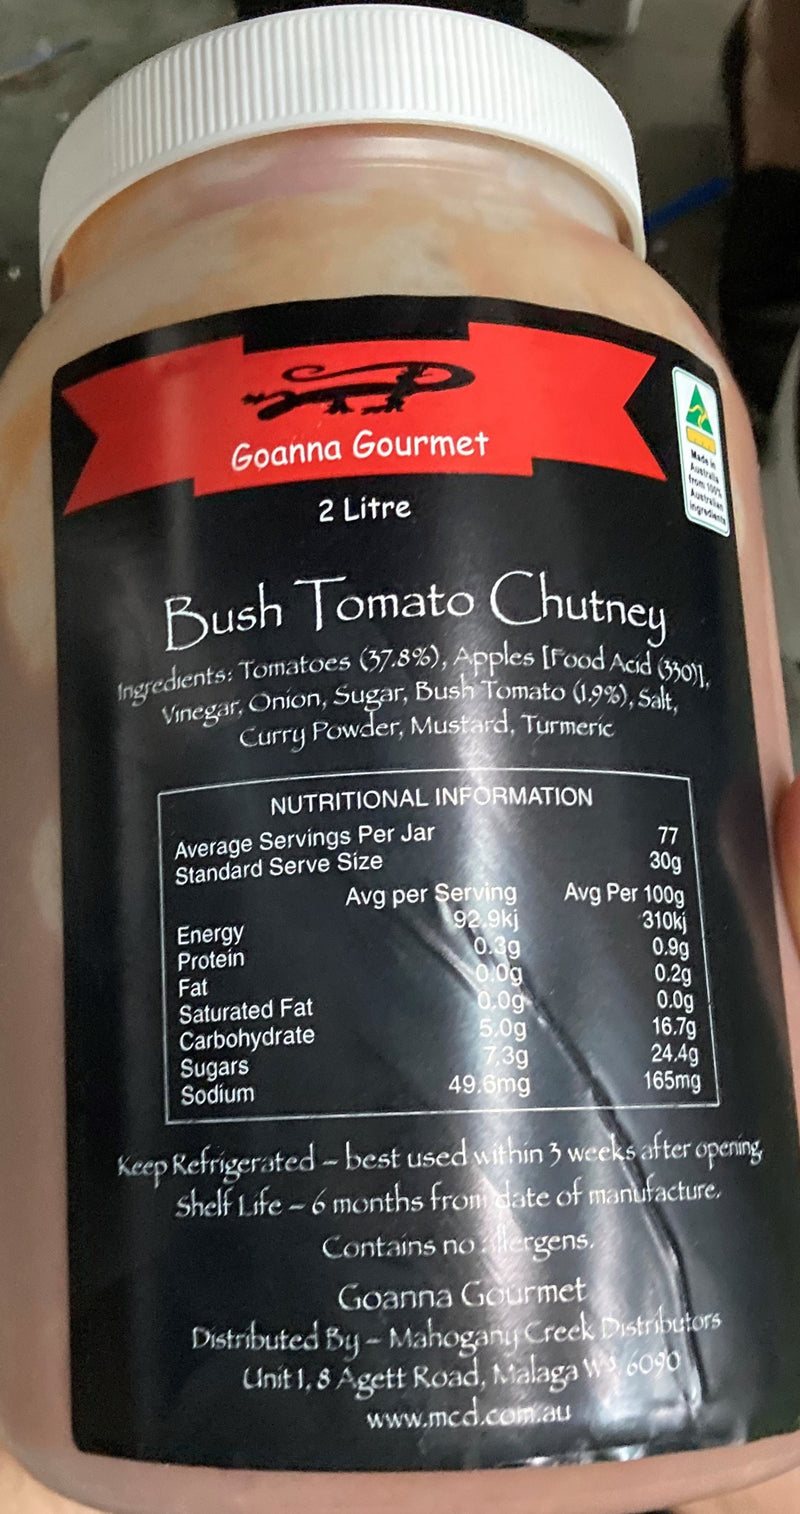 Native Bush Tomato Chutney 2kg Goanna Gourmet